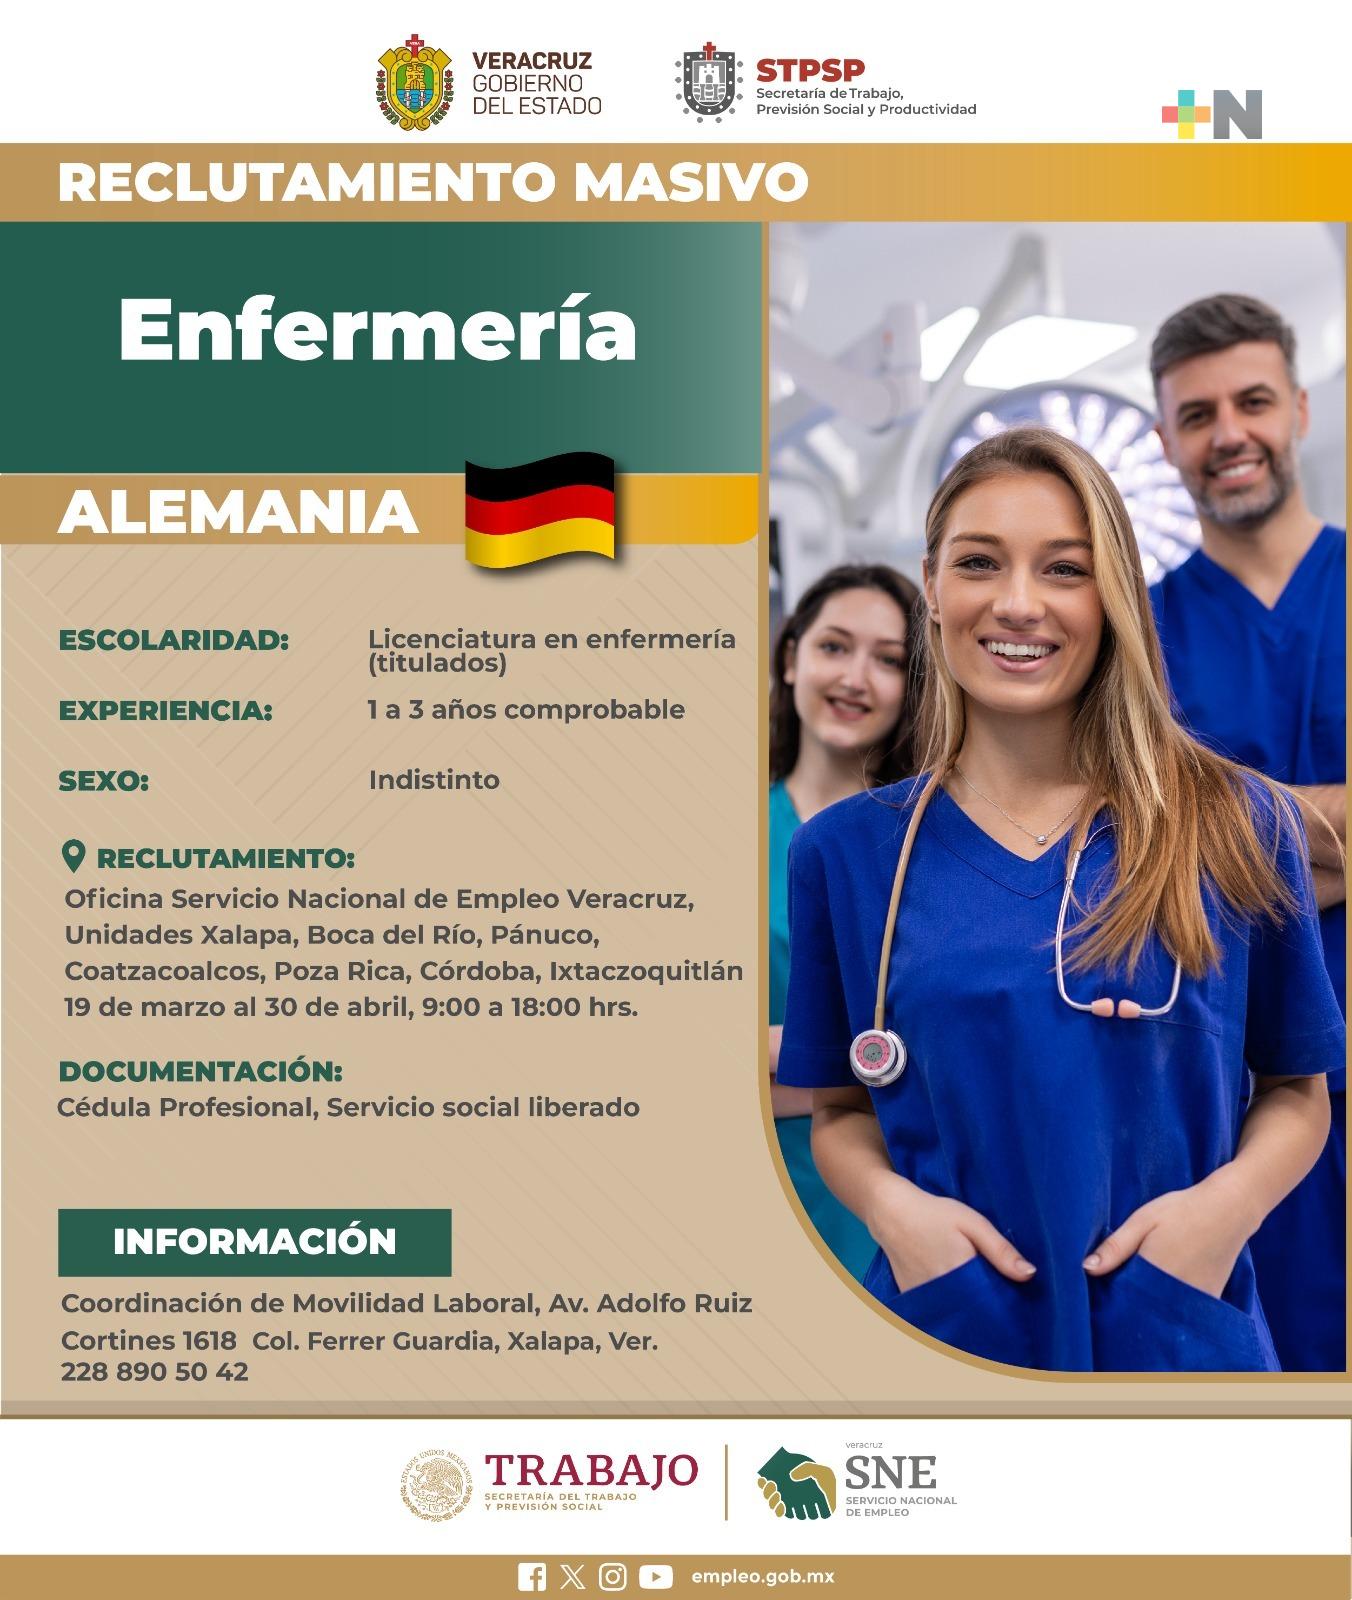 Enfermeras pueden trabajar en vacantes que ofrece Alemania a través del SNE